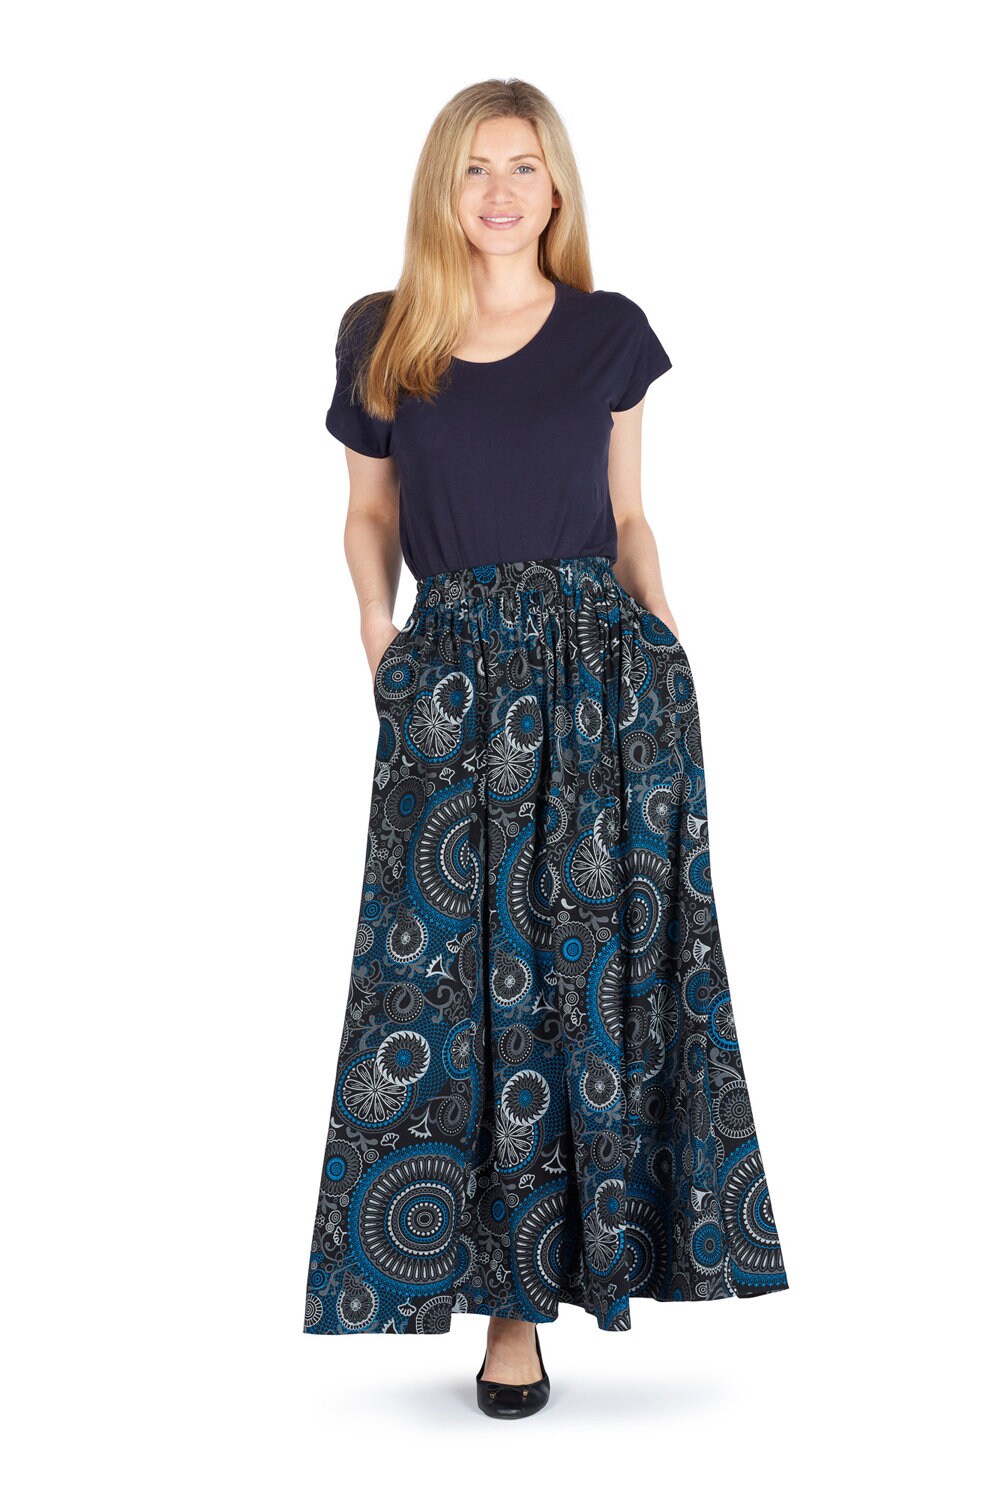 Mandala Print Full Maxi Skirt With Pockets up to PLUS Size - Etsy UK